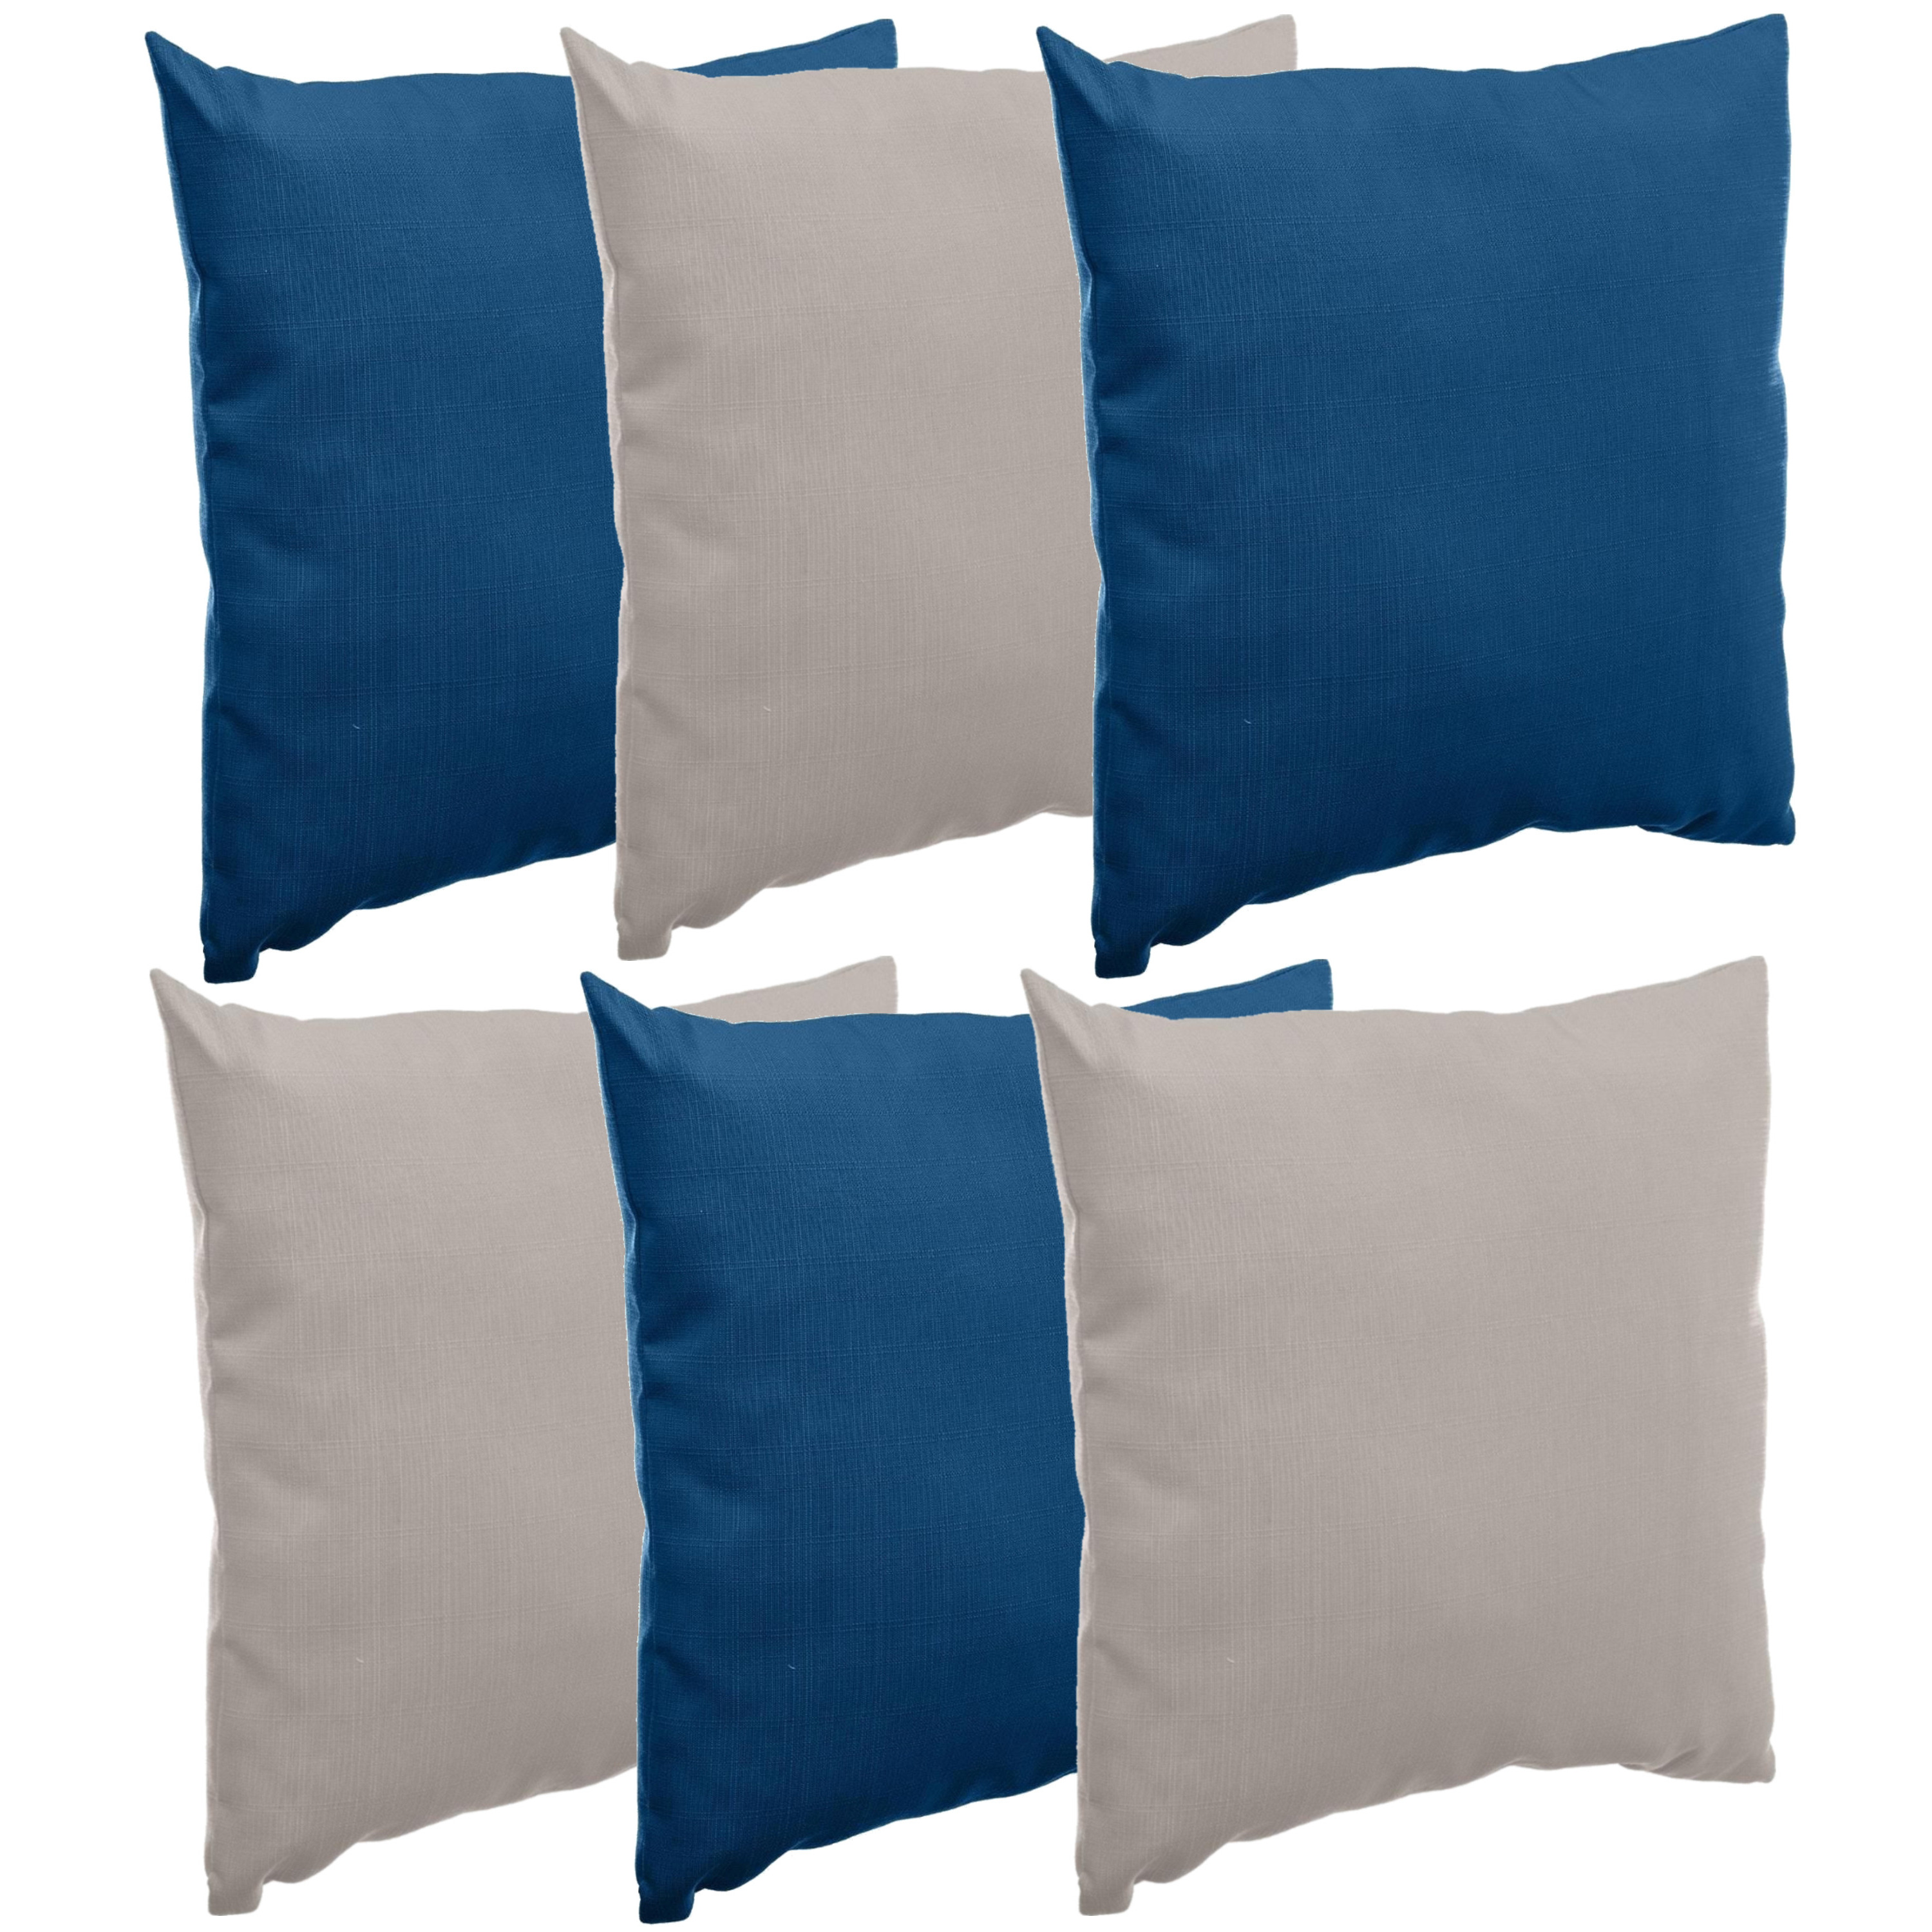 Bank-sier-tuin kussens voor binnen-buiten set 6x stuks indigo blauw-taupe 40 x 40 cm